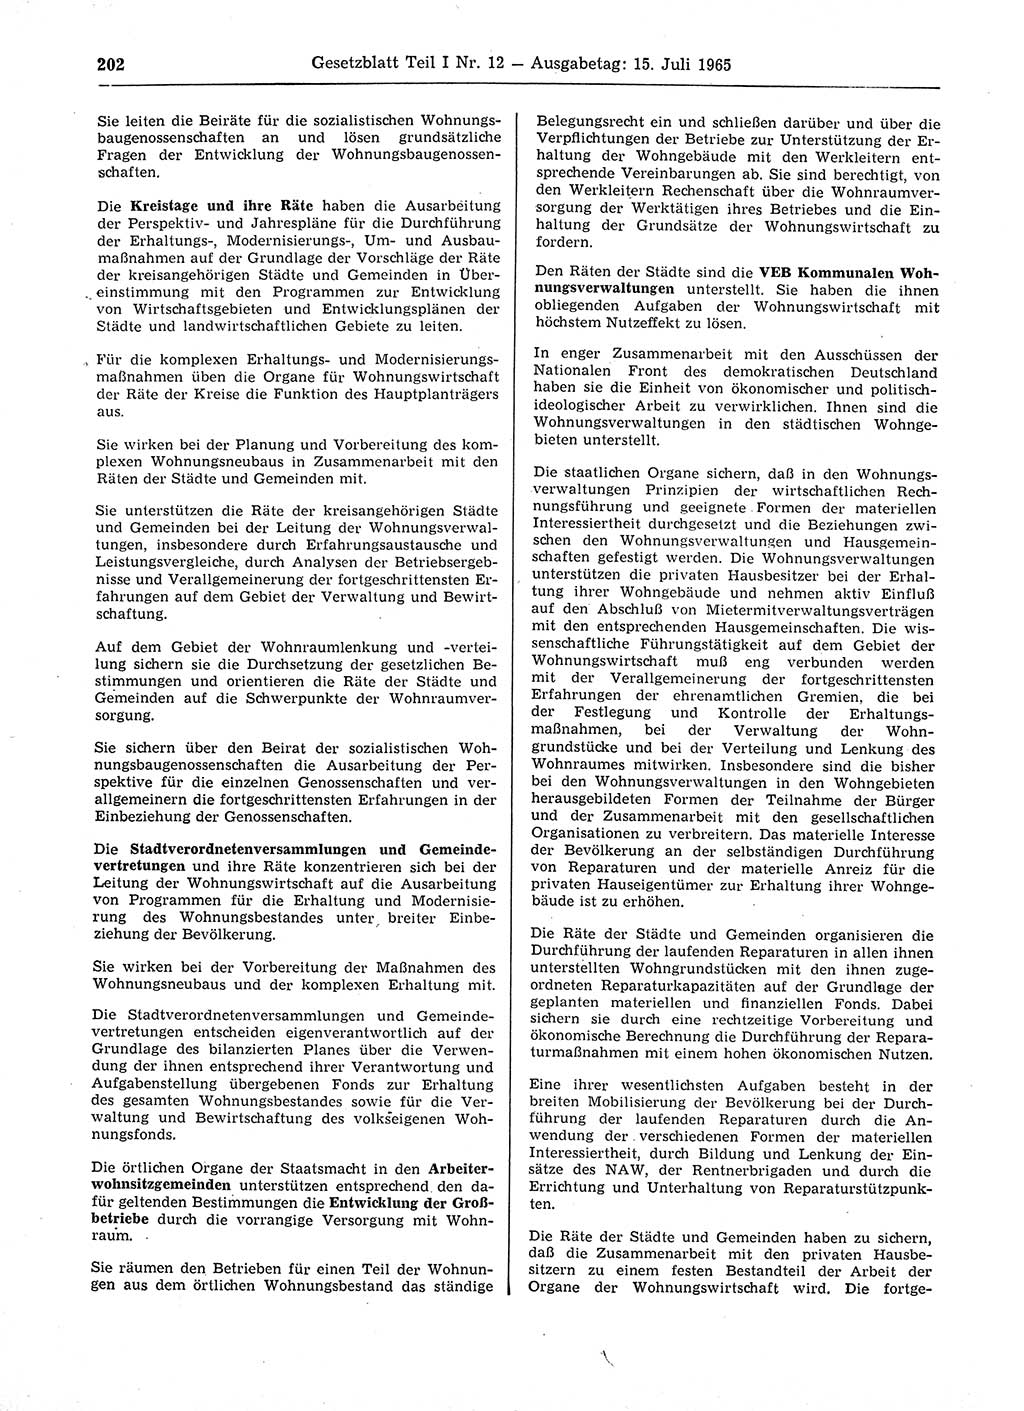 Gesetzblatt (GBl.) der Deutschen Demokratischen Republik (DDR) Teil Ⅰ 1965, Seite 202 (GBl. DDR Ⅰ 1965, S. 202)